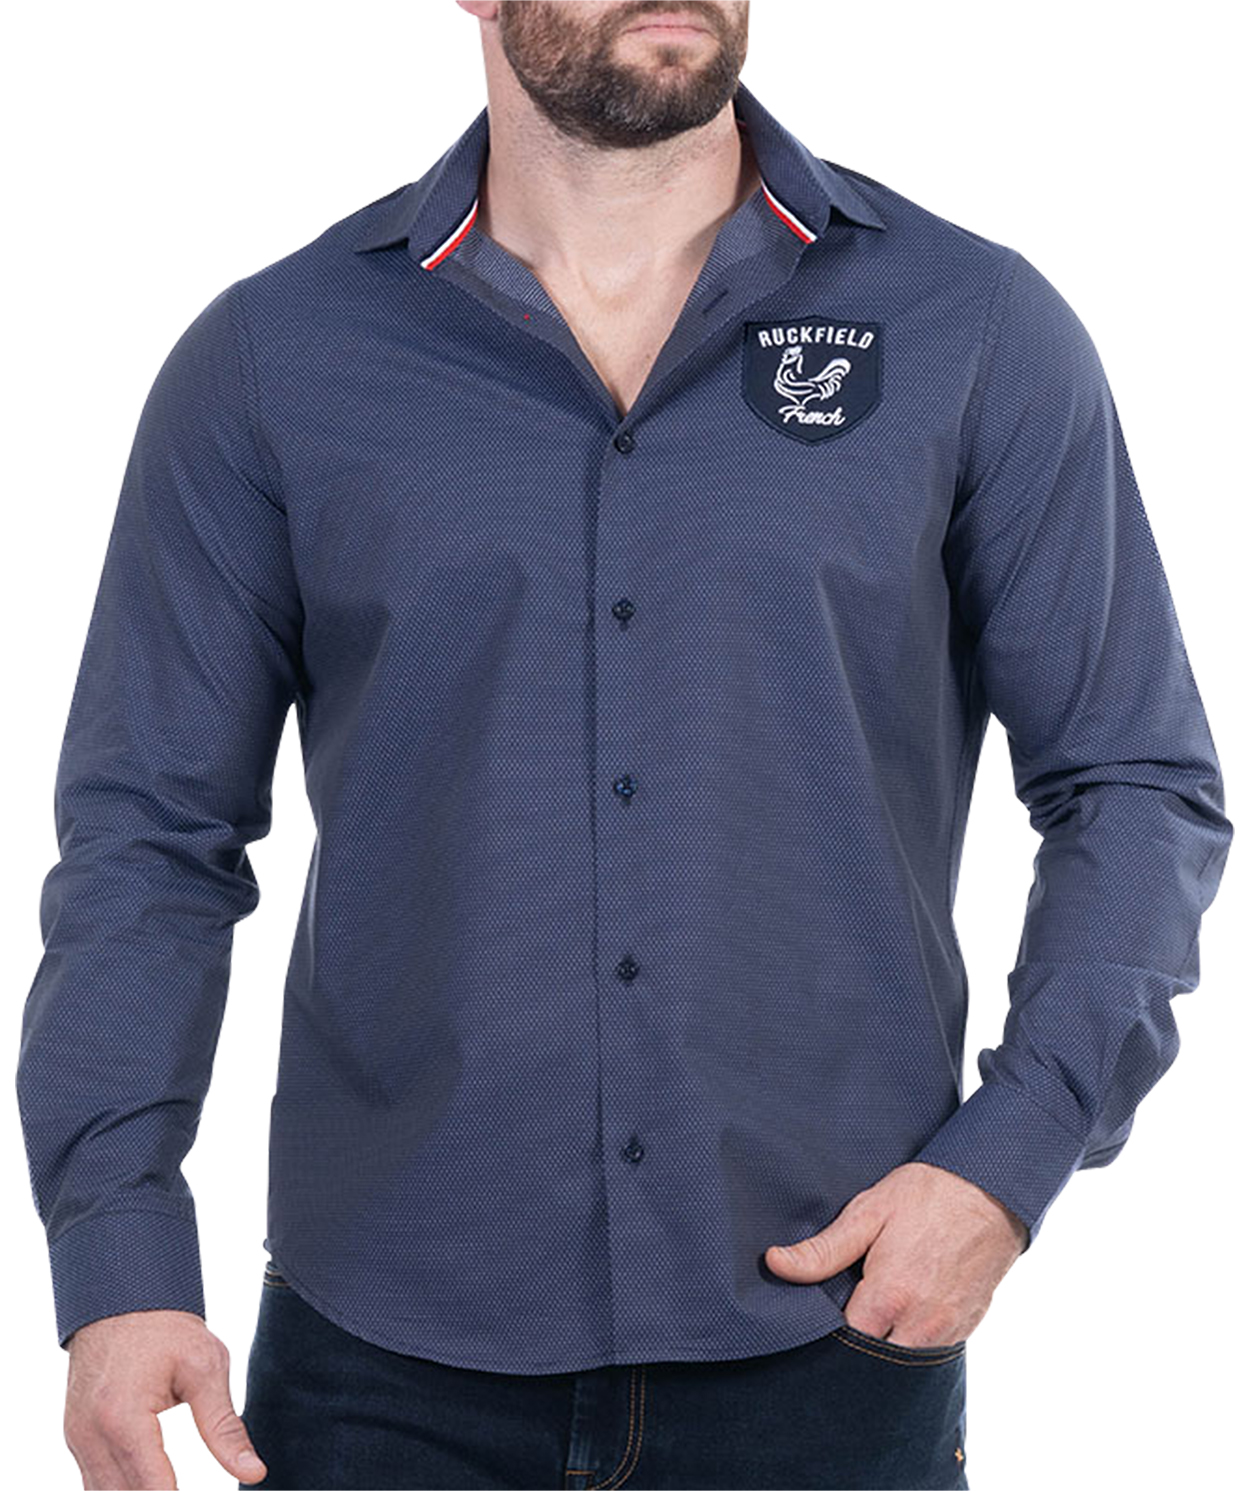 chemise ruckfield coton avec manches longues et col français marine